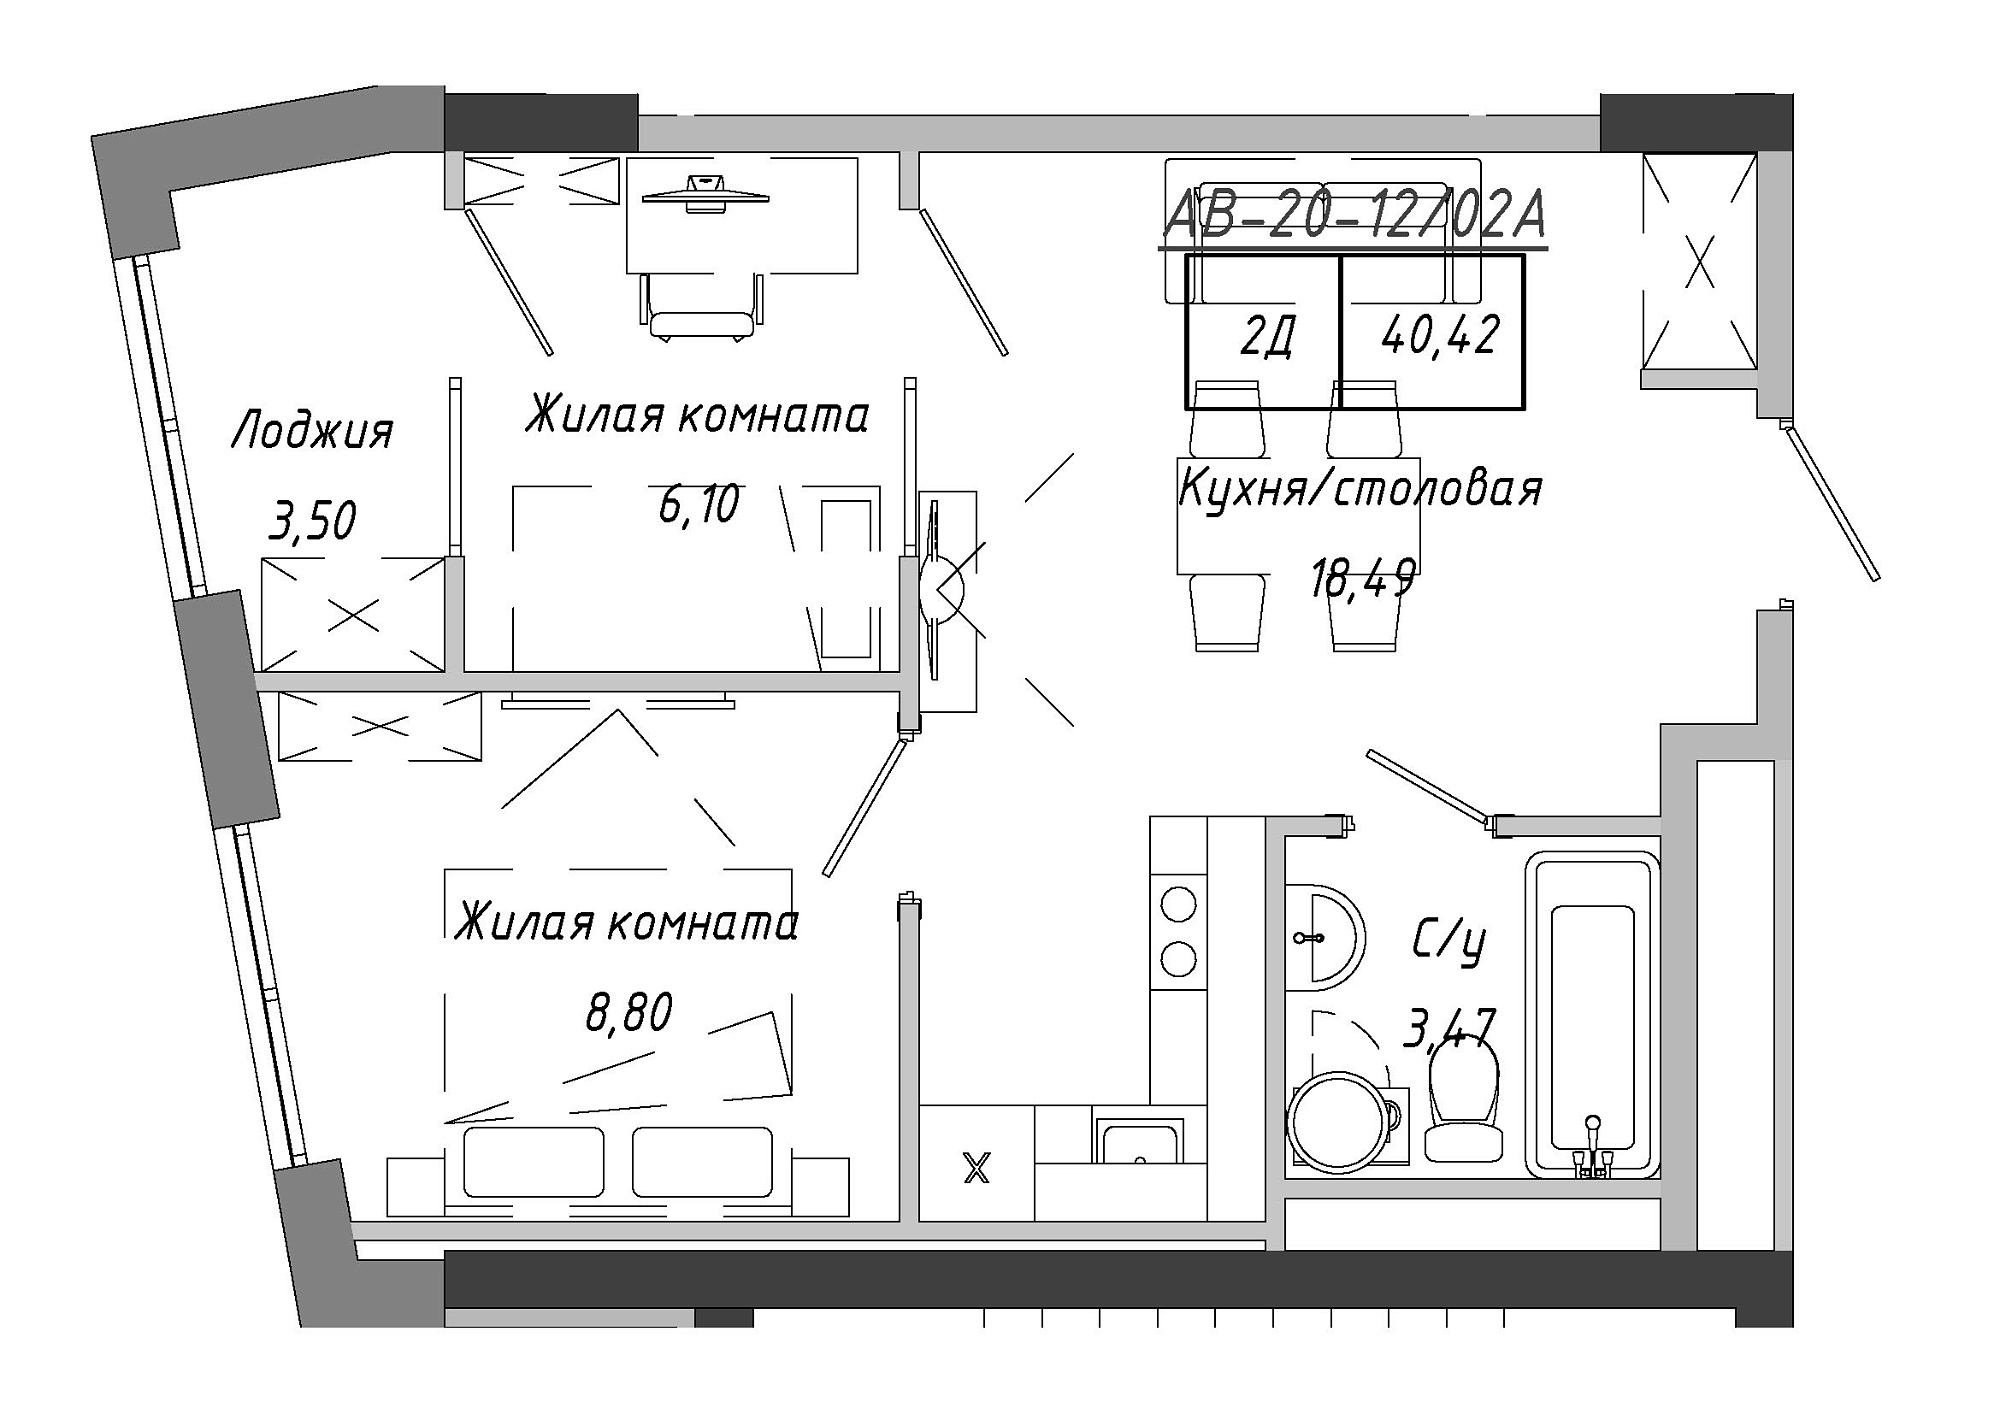 Планировка 2-к квартира площей 41.9м2, AB-20-12/0002а.